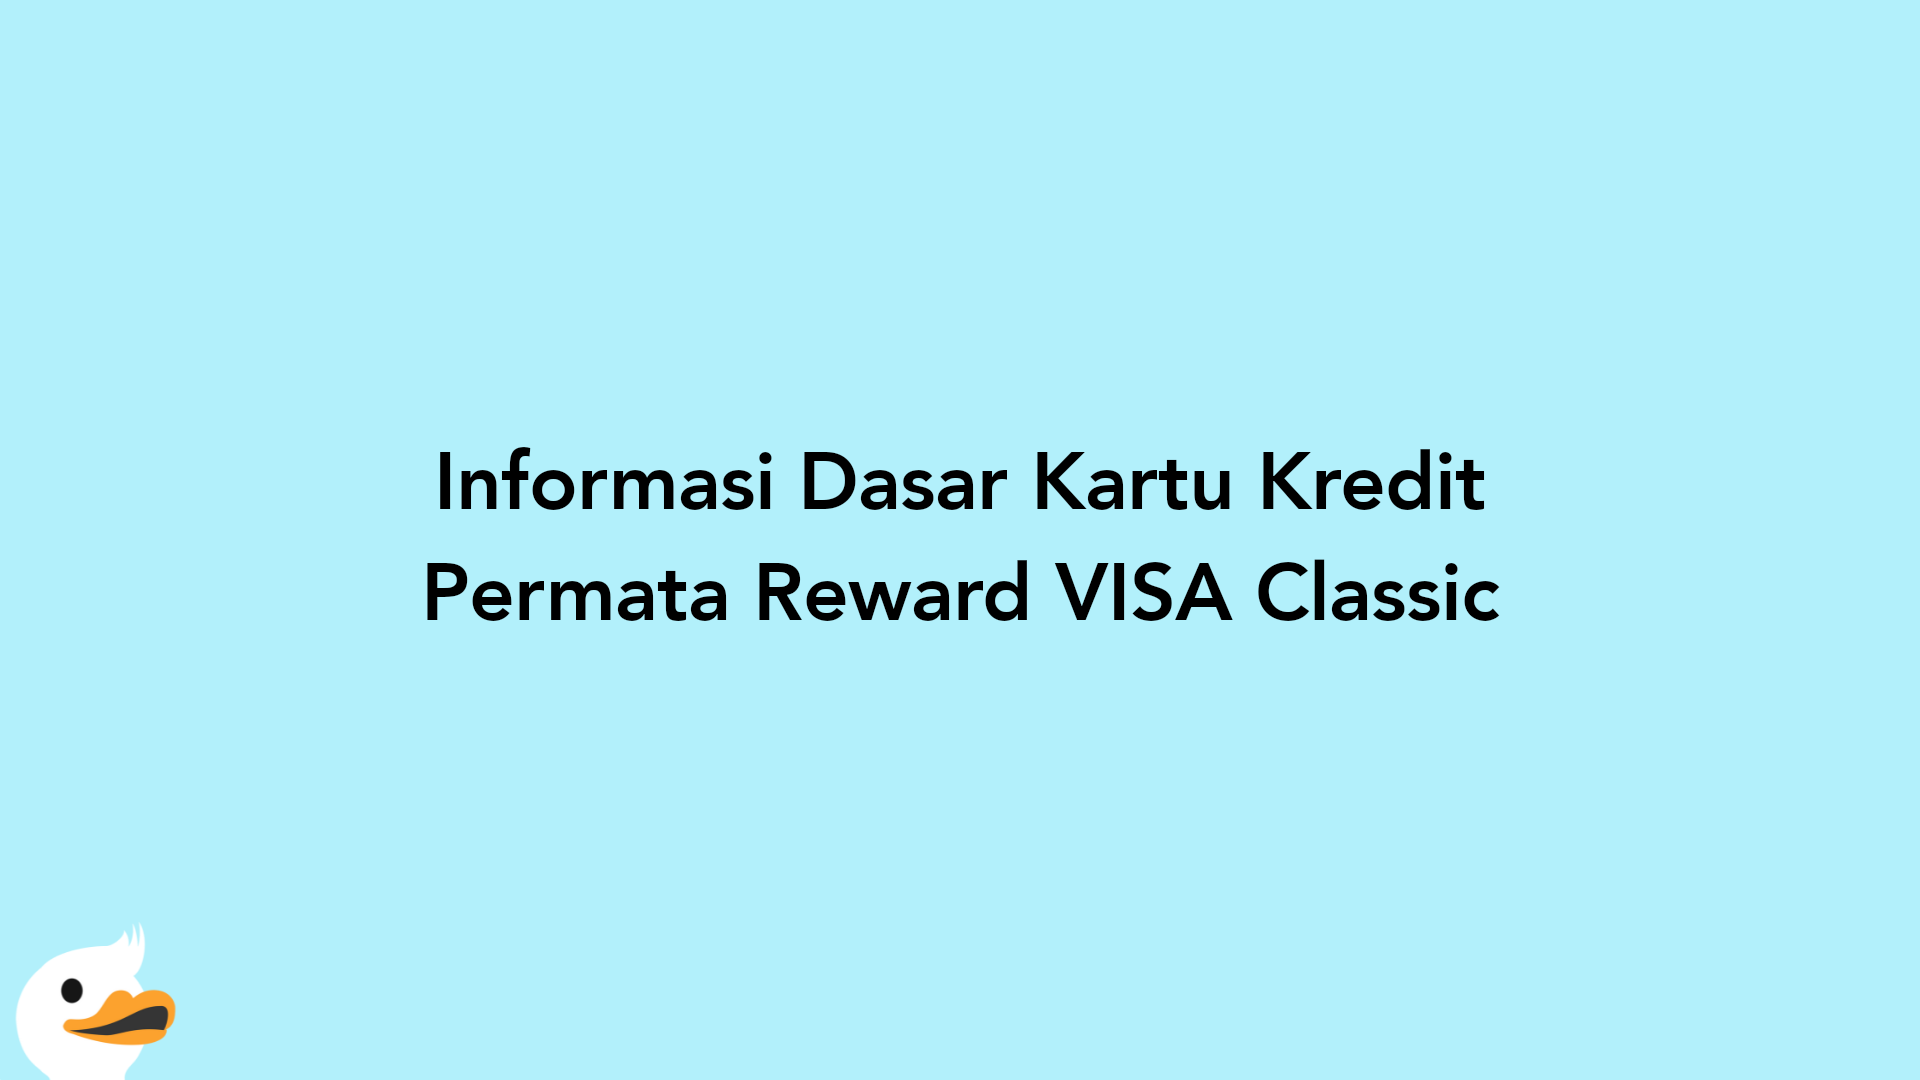 Informasi Dasar Kartu Kredit Permata Reward VISA Classic